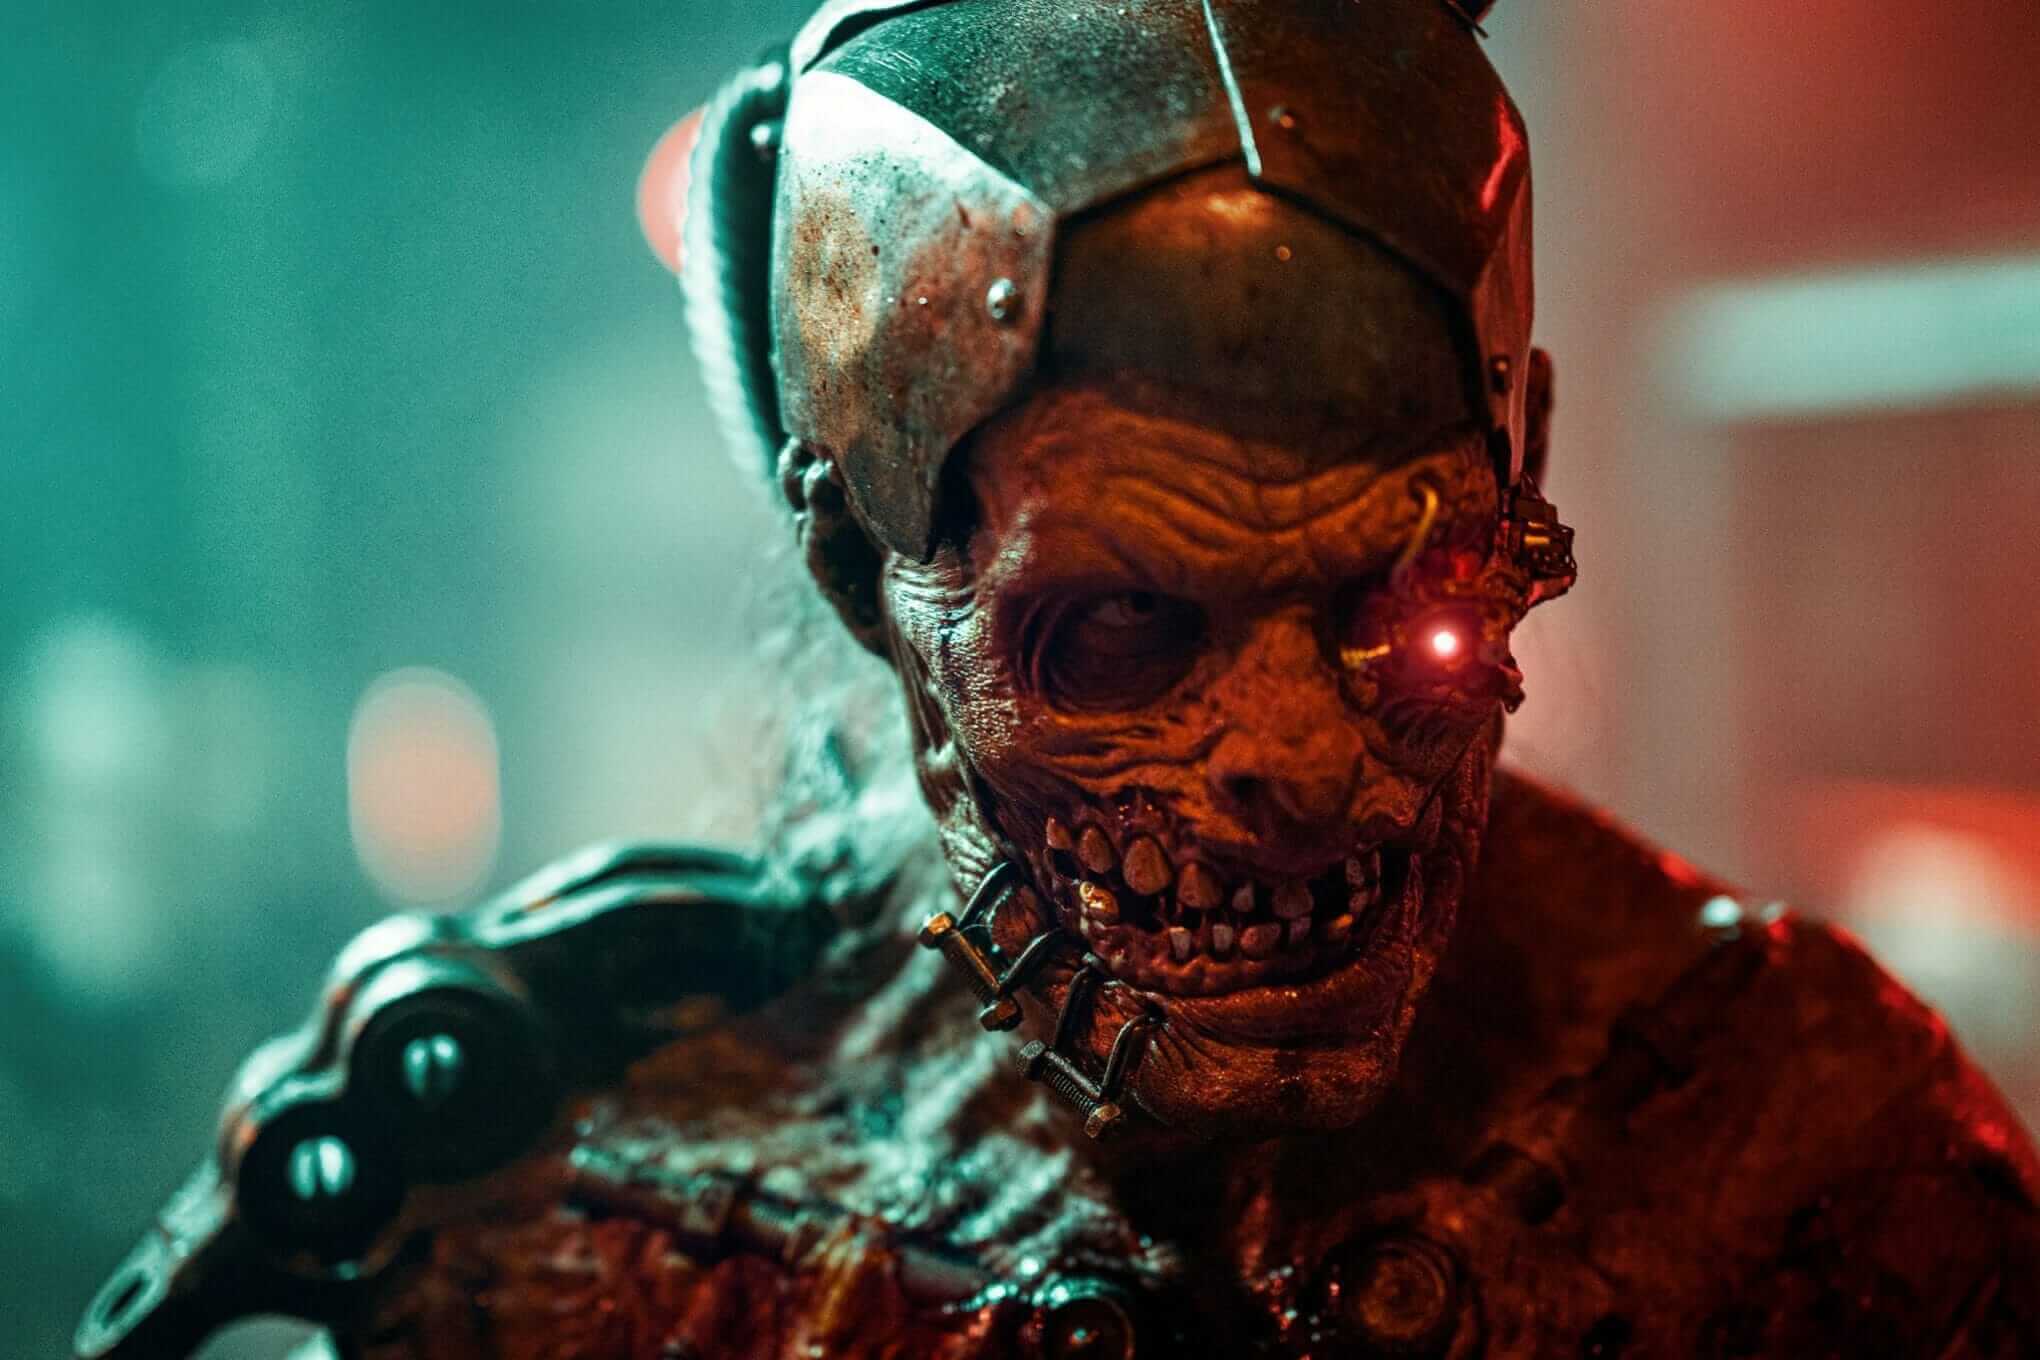 Cyborg Zombie Alex Jewson Portrait Photo By Thom Davies Scaled